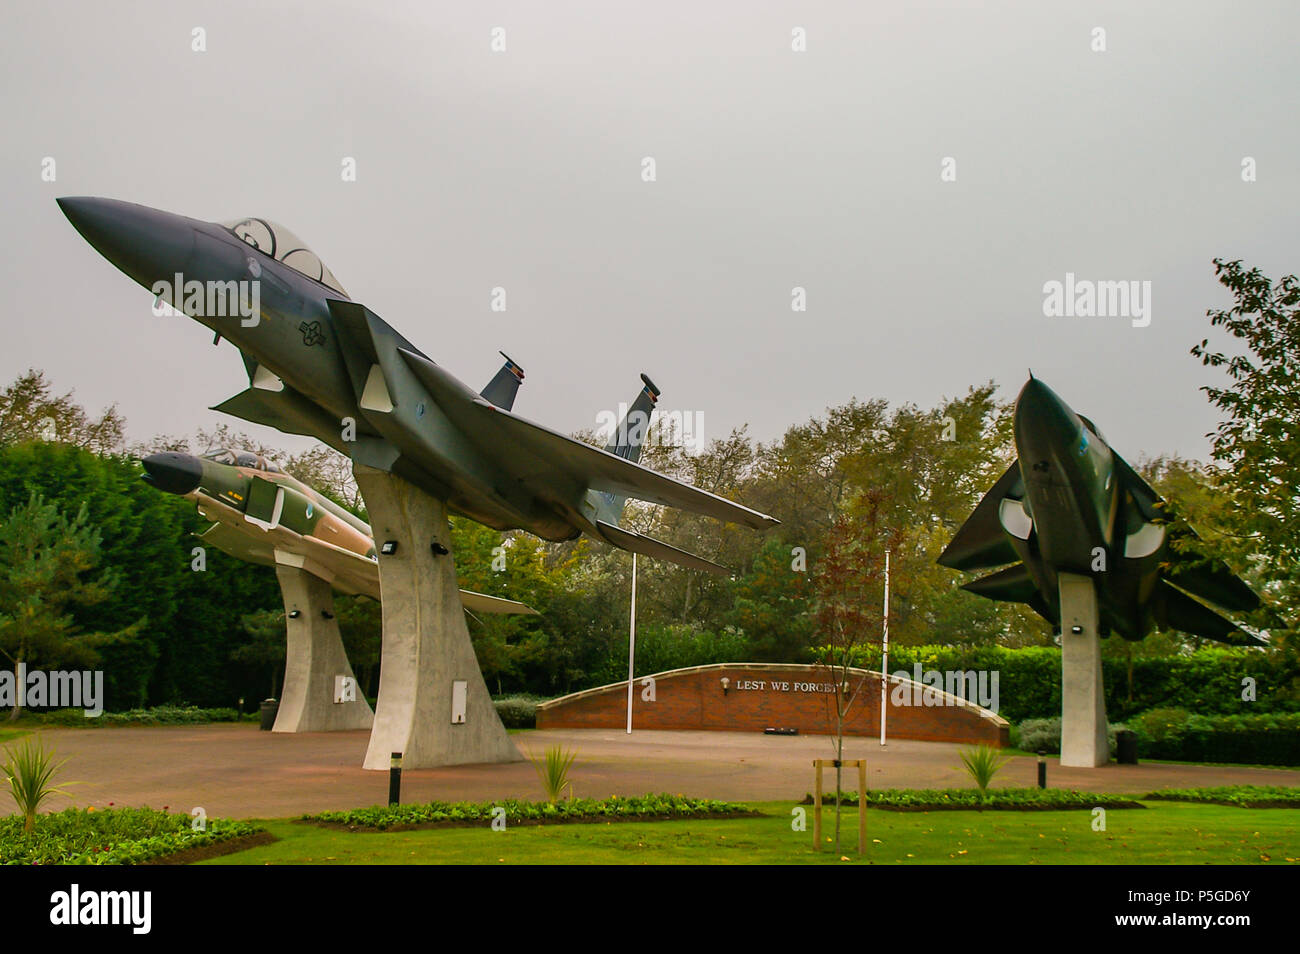 RAF Lakenheath USAF United States Air Force Fighter jet Base, Suffolk, Großbritannien. Freiheit Flügel Memorial Park. F-4, F-15, F-111-Flugzeuge, die auf Sockeln Stockfoto